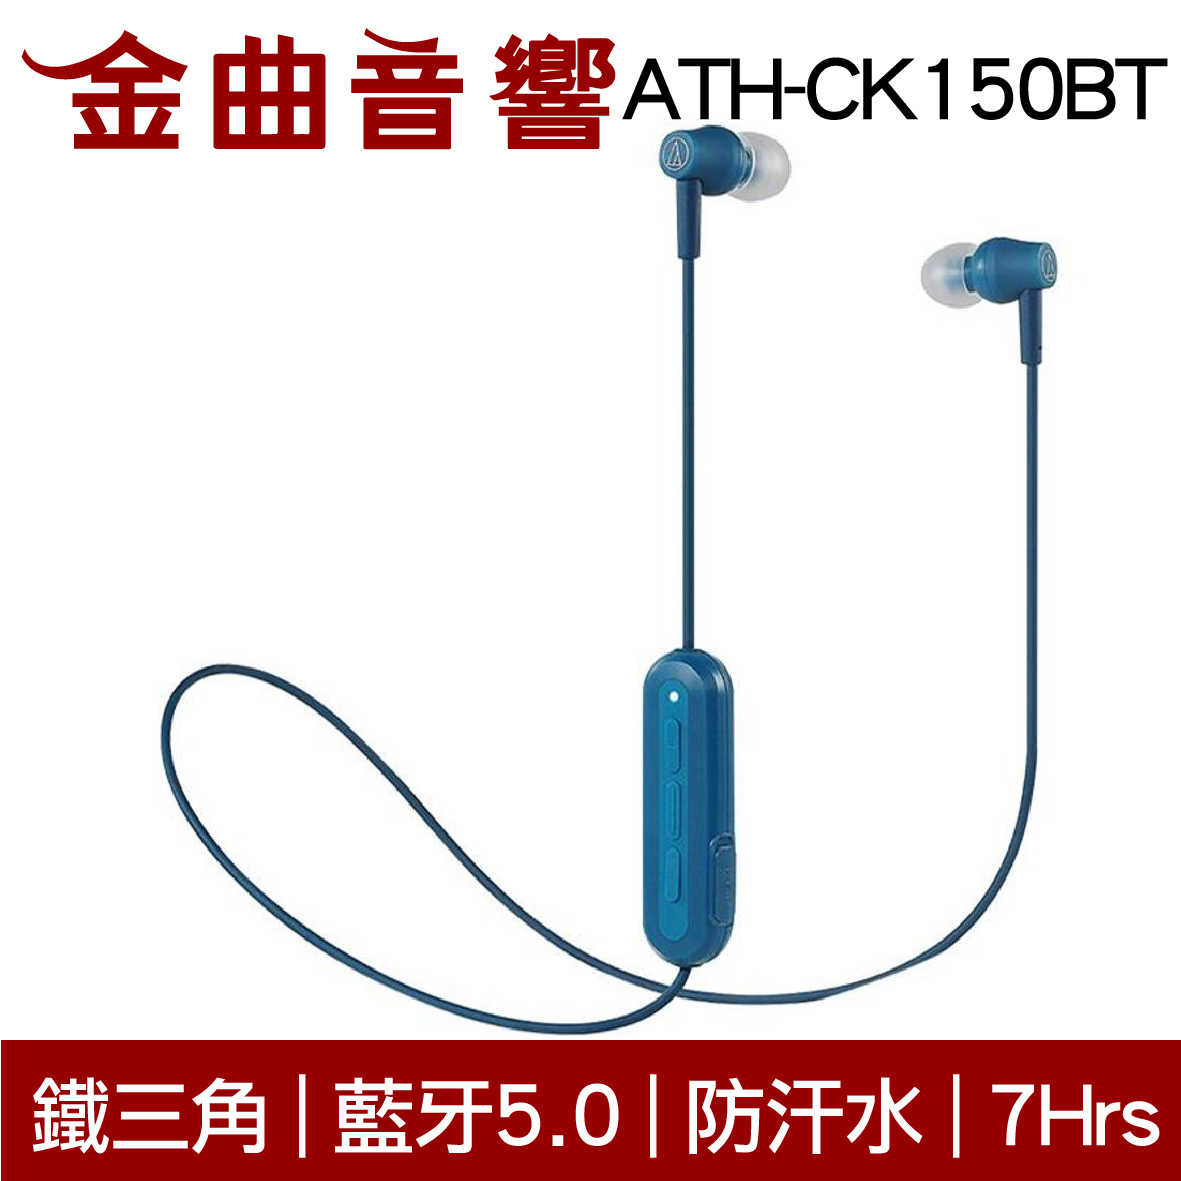 鐵三角 ATH-CK150BT 白色 可通話 無線 藍牙 耳道式耳機 | 金曲音響